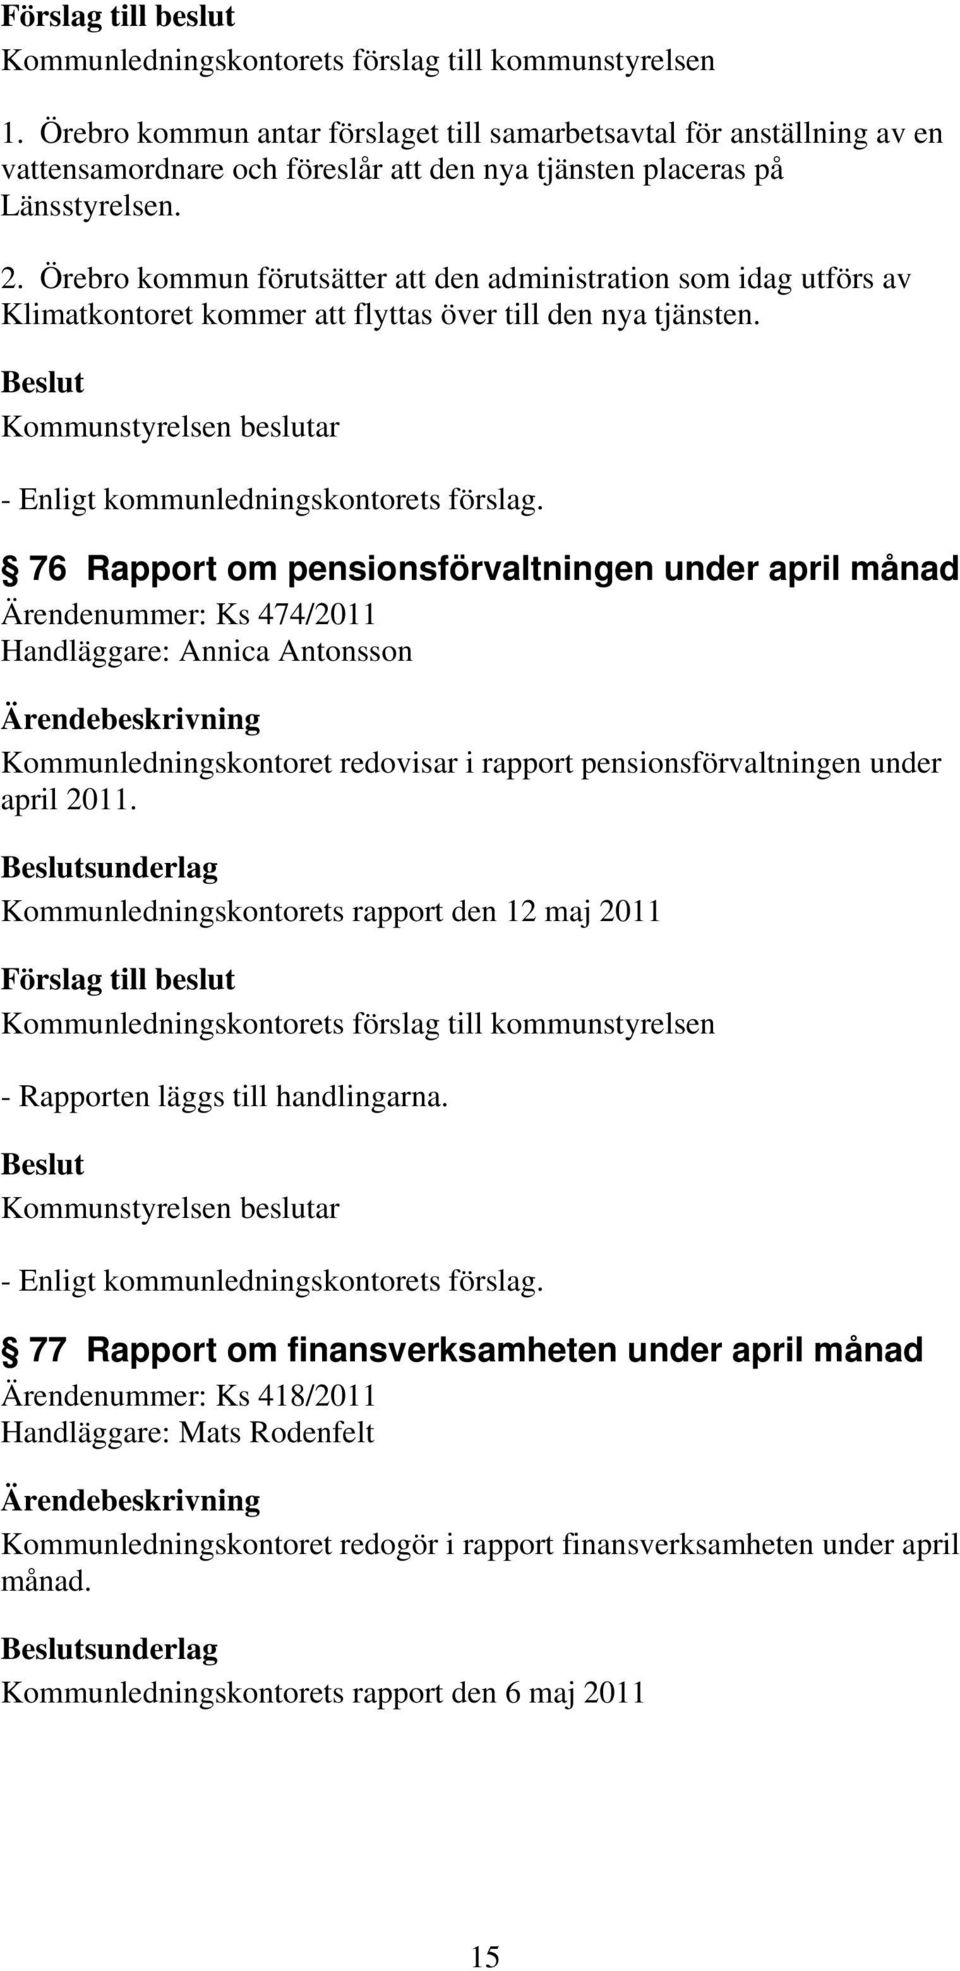 76 Rapport om pensionsförvaltningen under april månad Ärendenummer: Ks 474/2011 Handläggare: Annica Antonsson Kommunledningskontoret redovisar i rapport pensionsförvaltningen under april 2011.